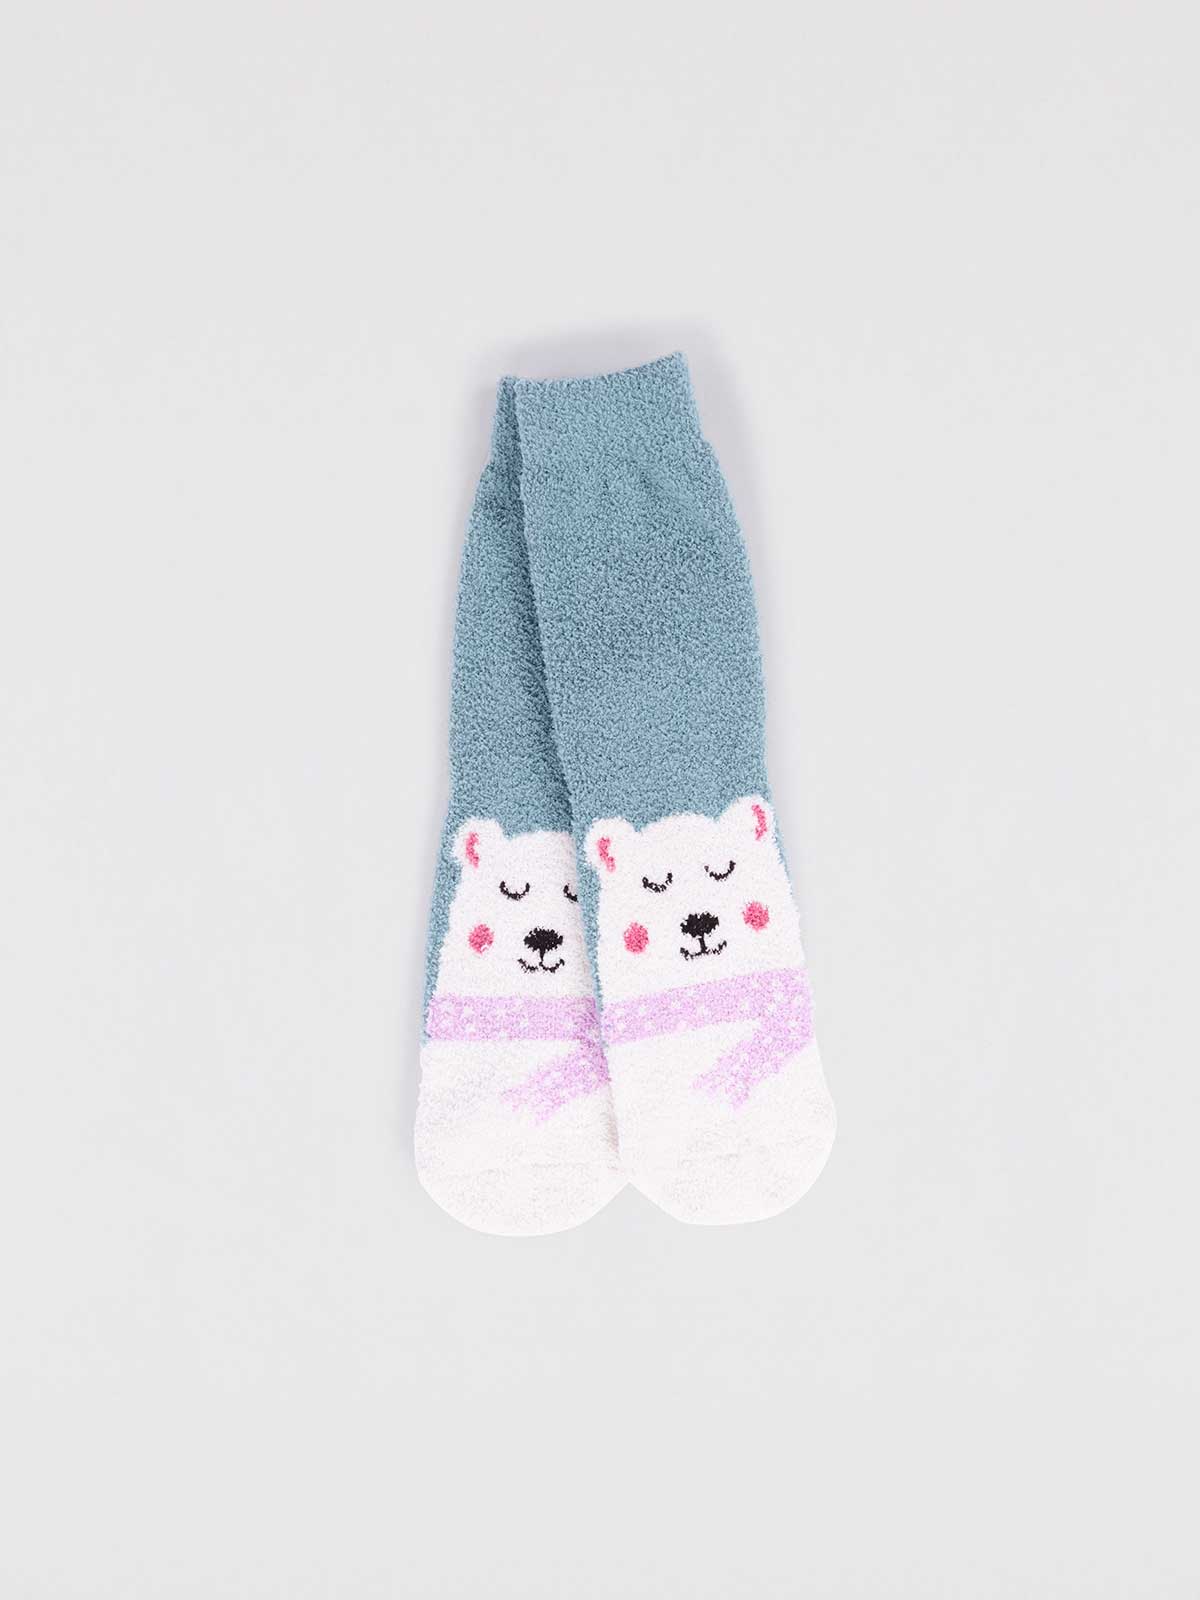 Polar Bear Bed Socks for Kids - The Sockery